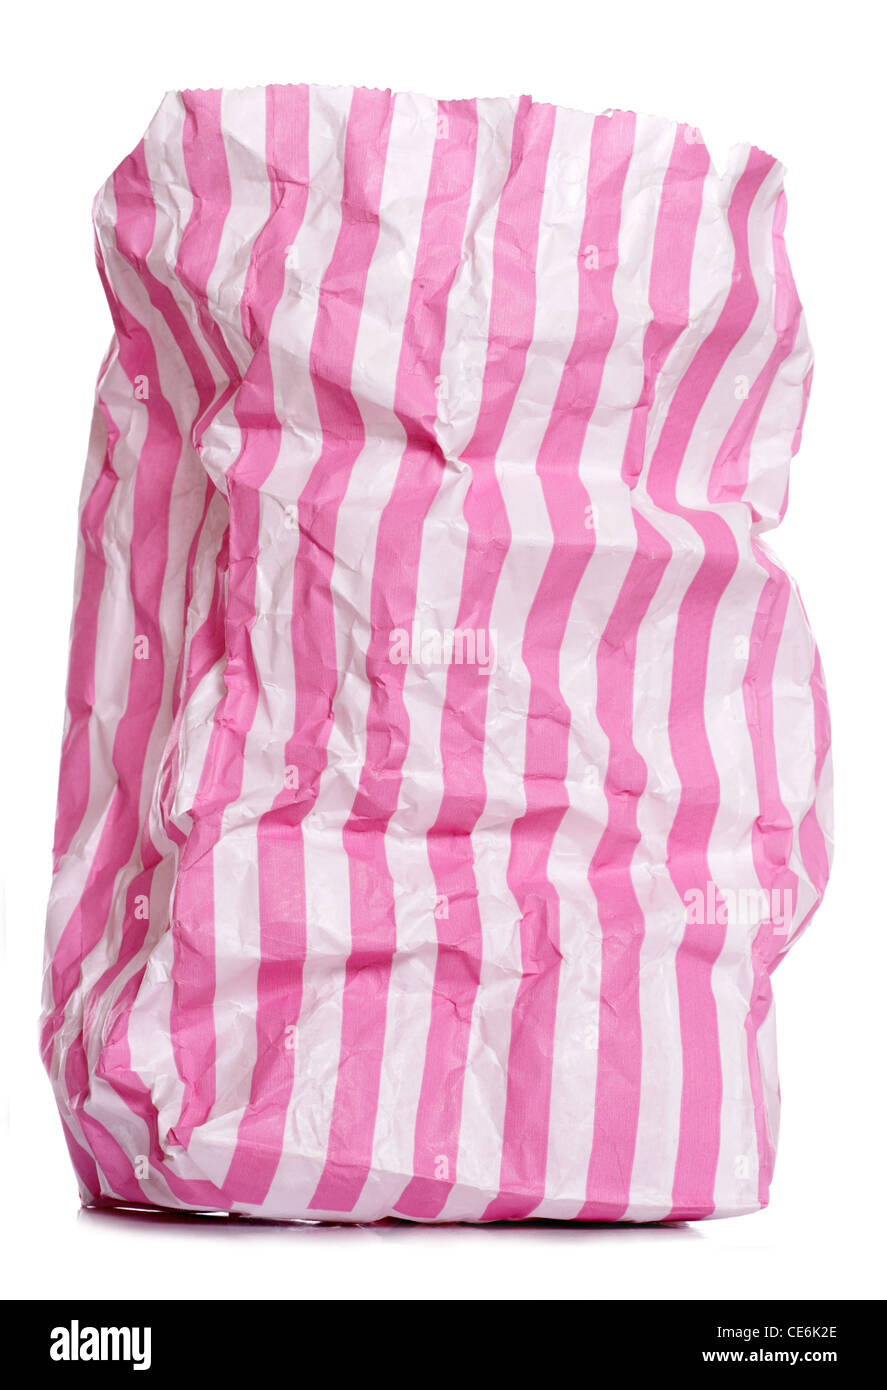 Retro sweet candy stripe sac sur fond blanc Banque D'Images